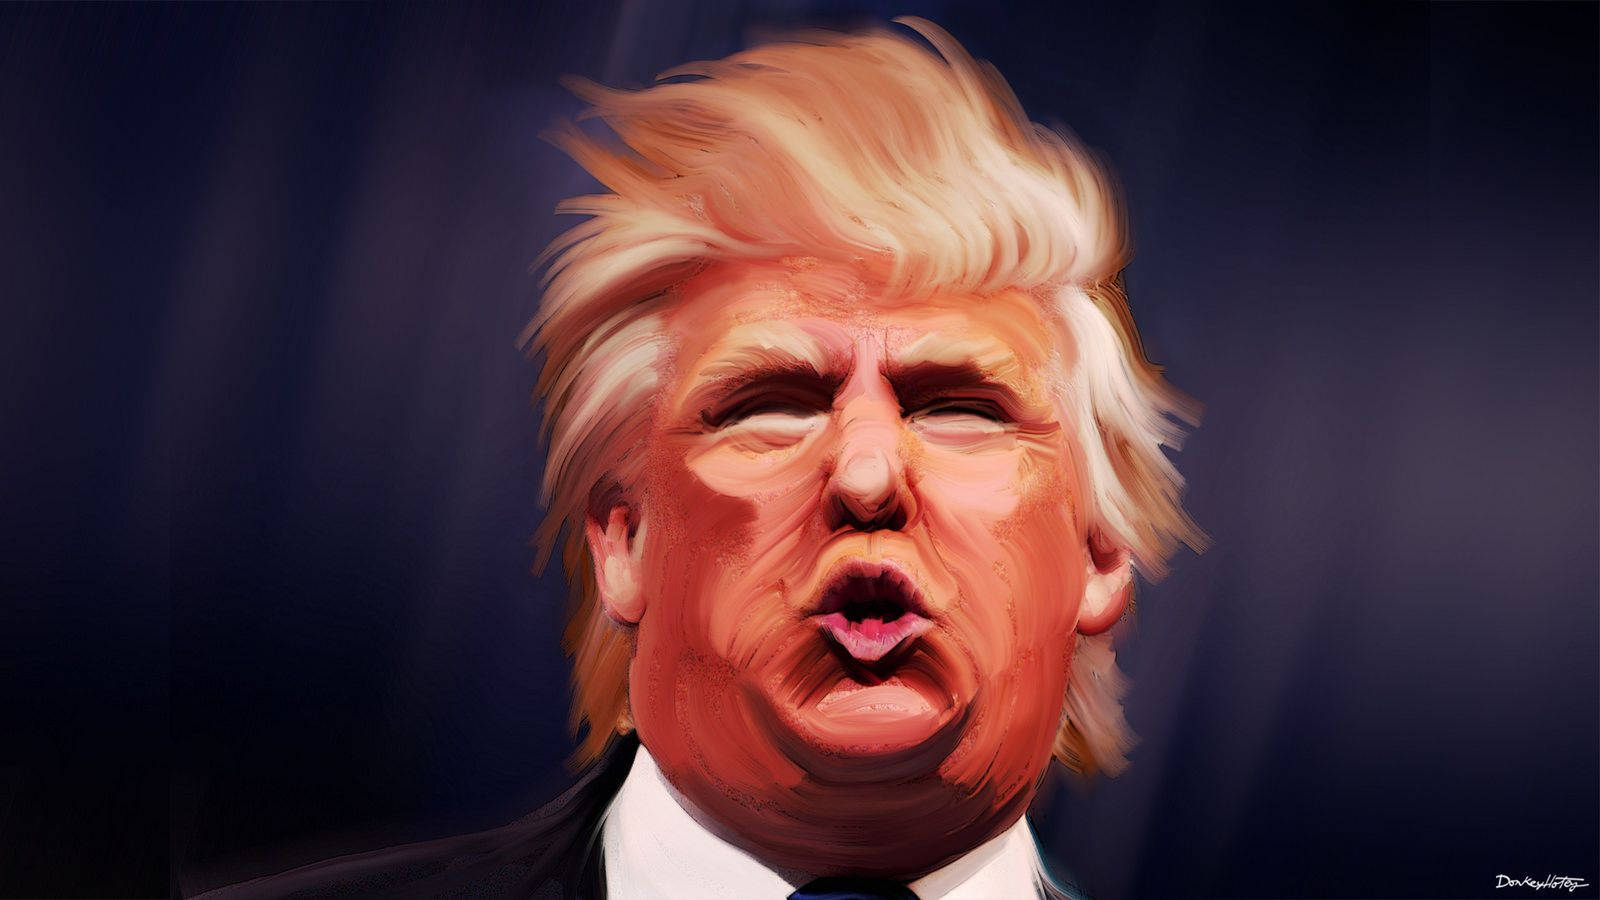 Donald Trump Duck Face Art Wallpaper